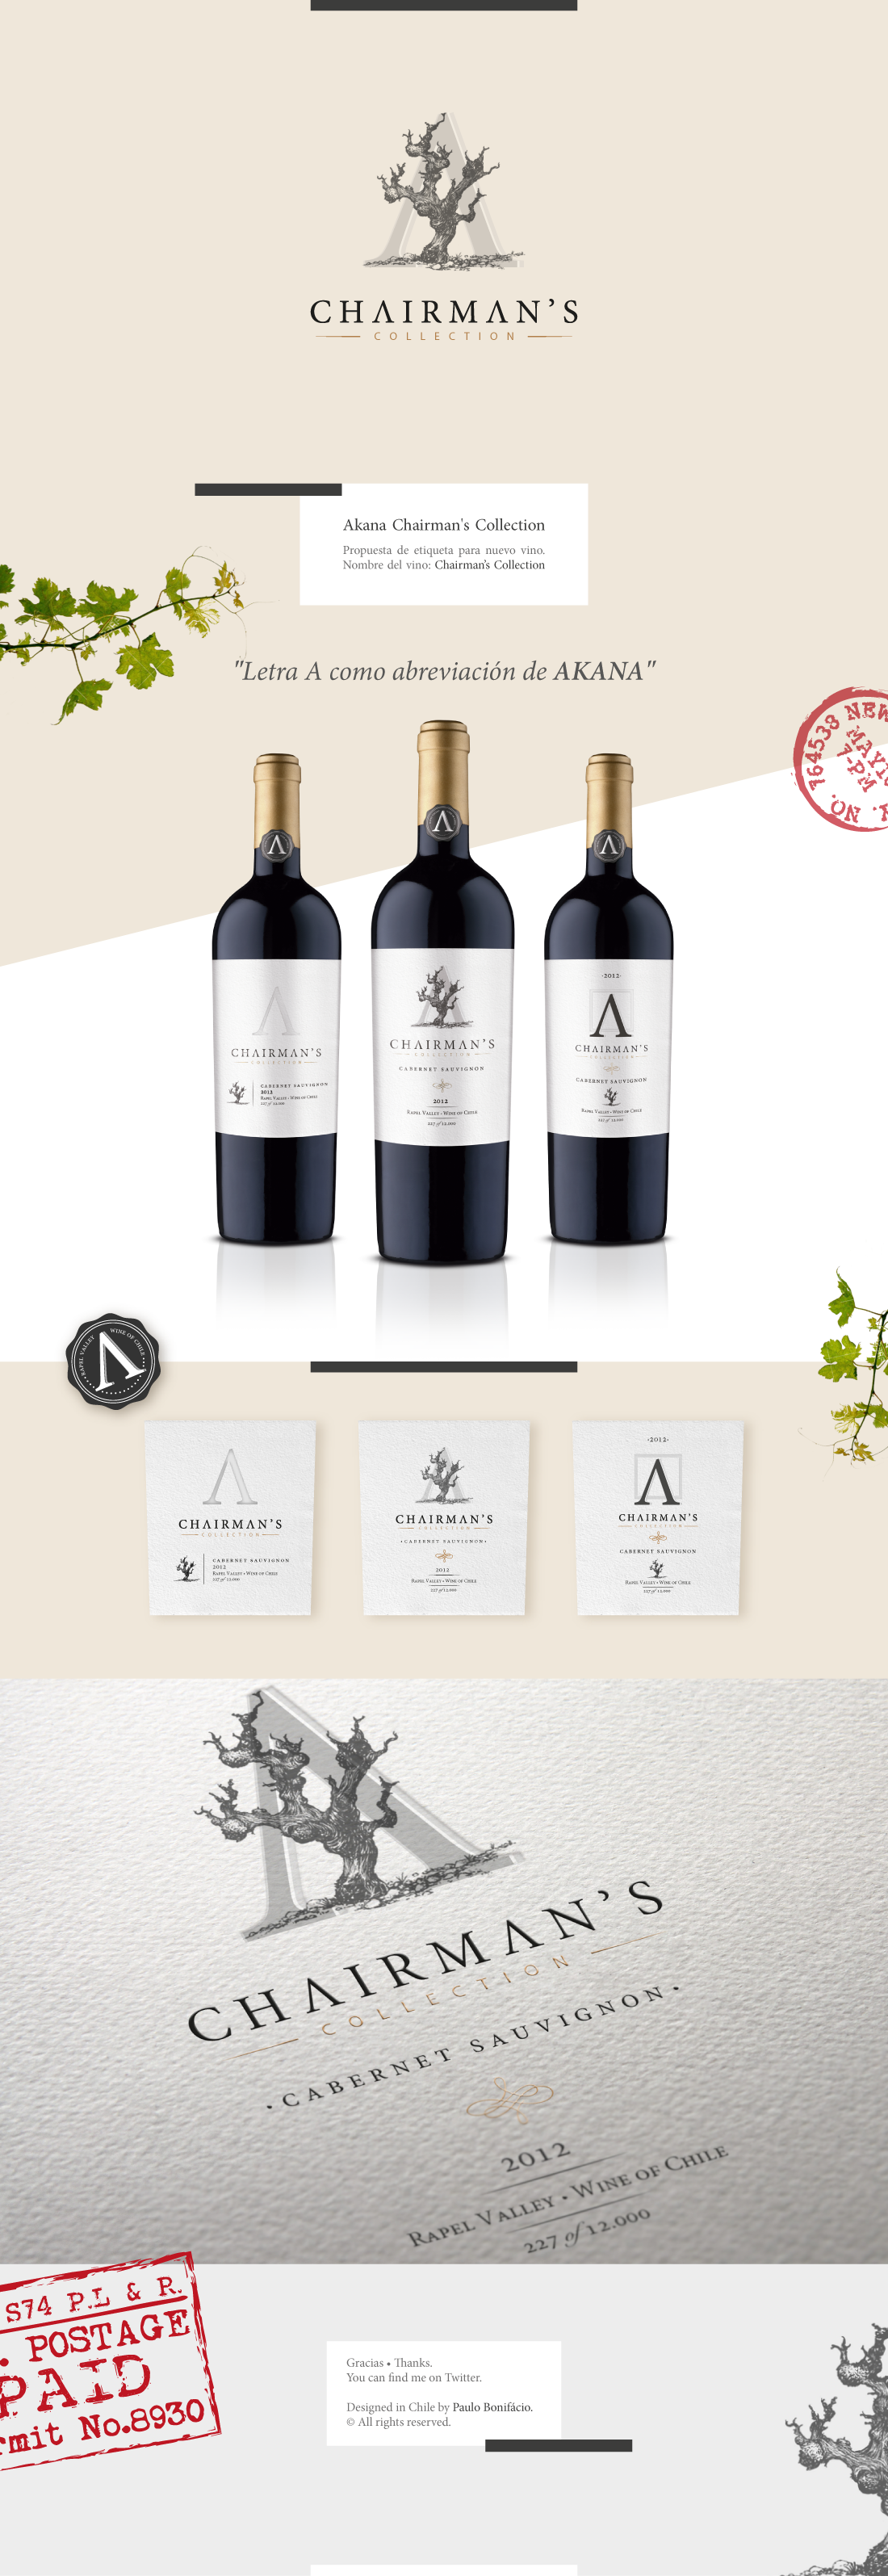 diseño Label wine Akana chairman Collection sauvignon cabernet diseño de etiqueta vino chileno